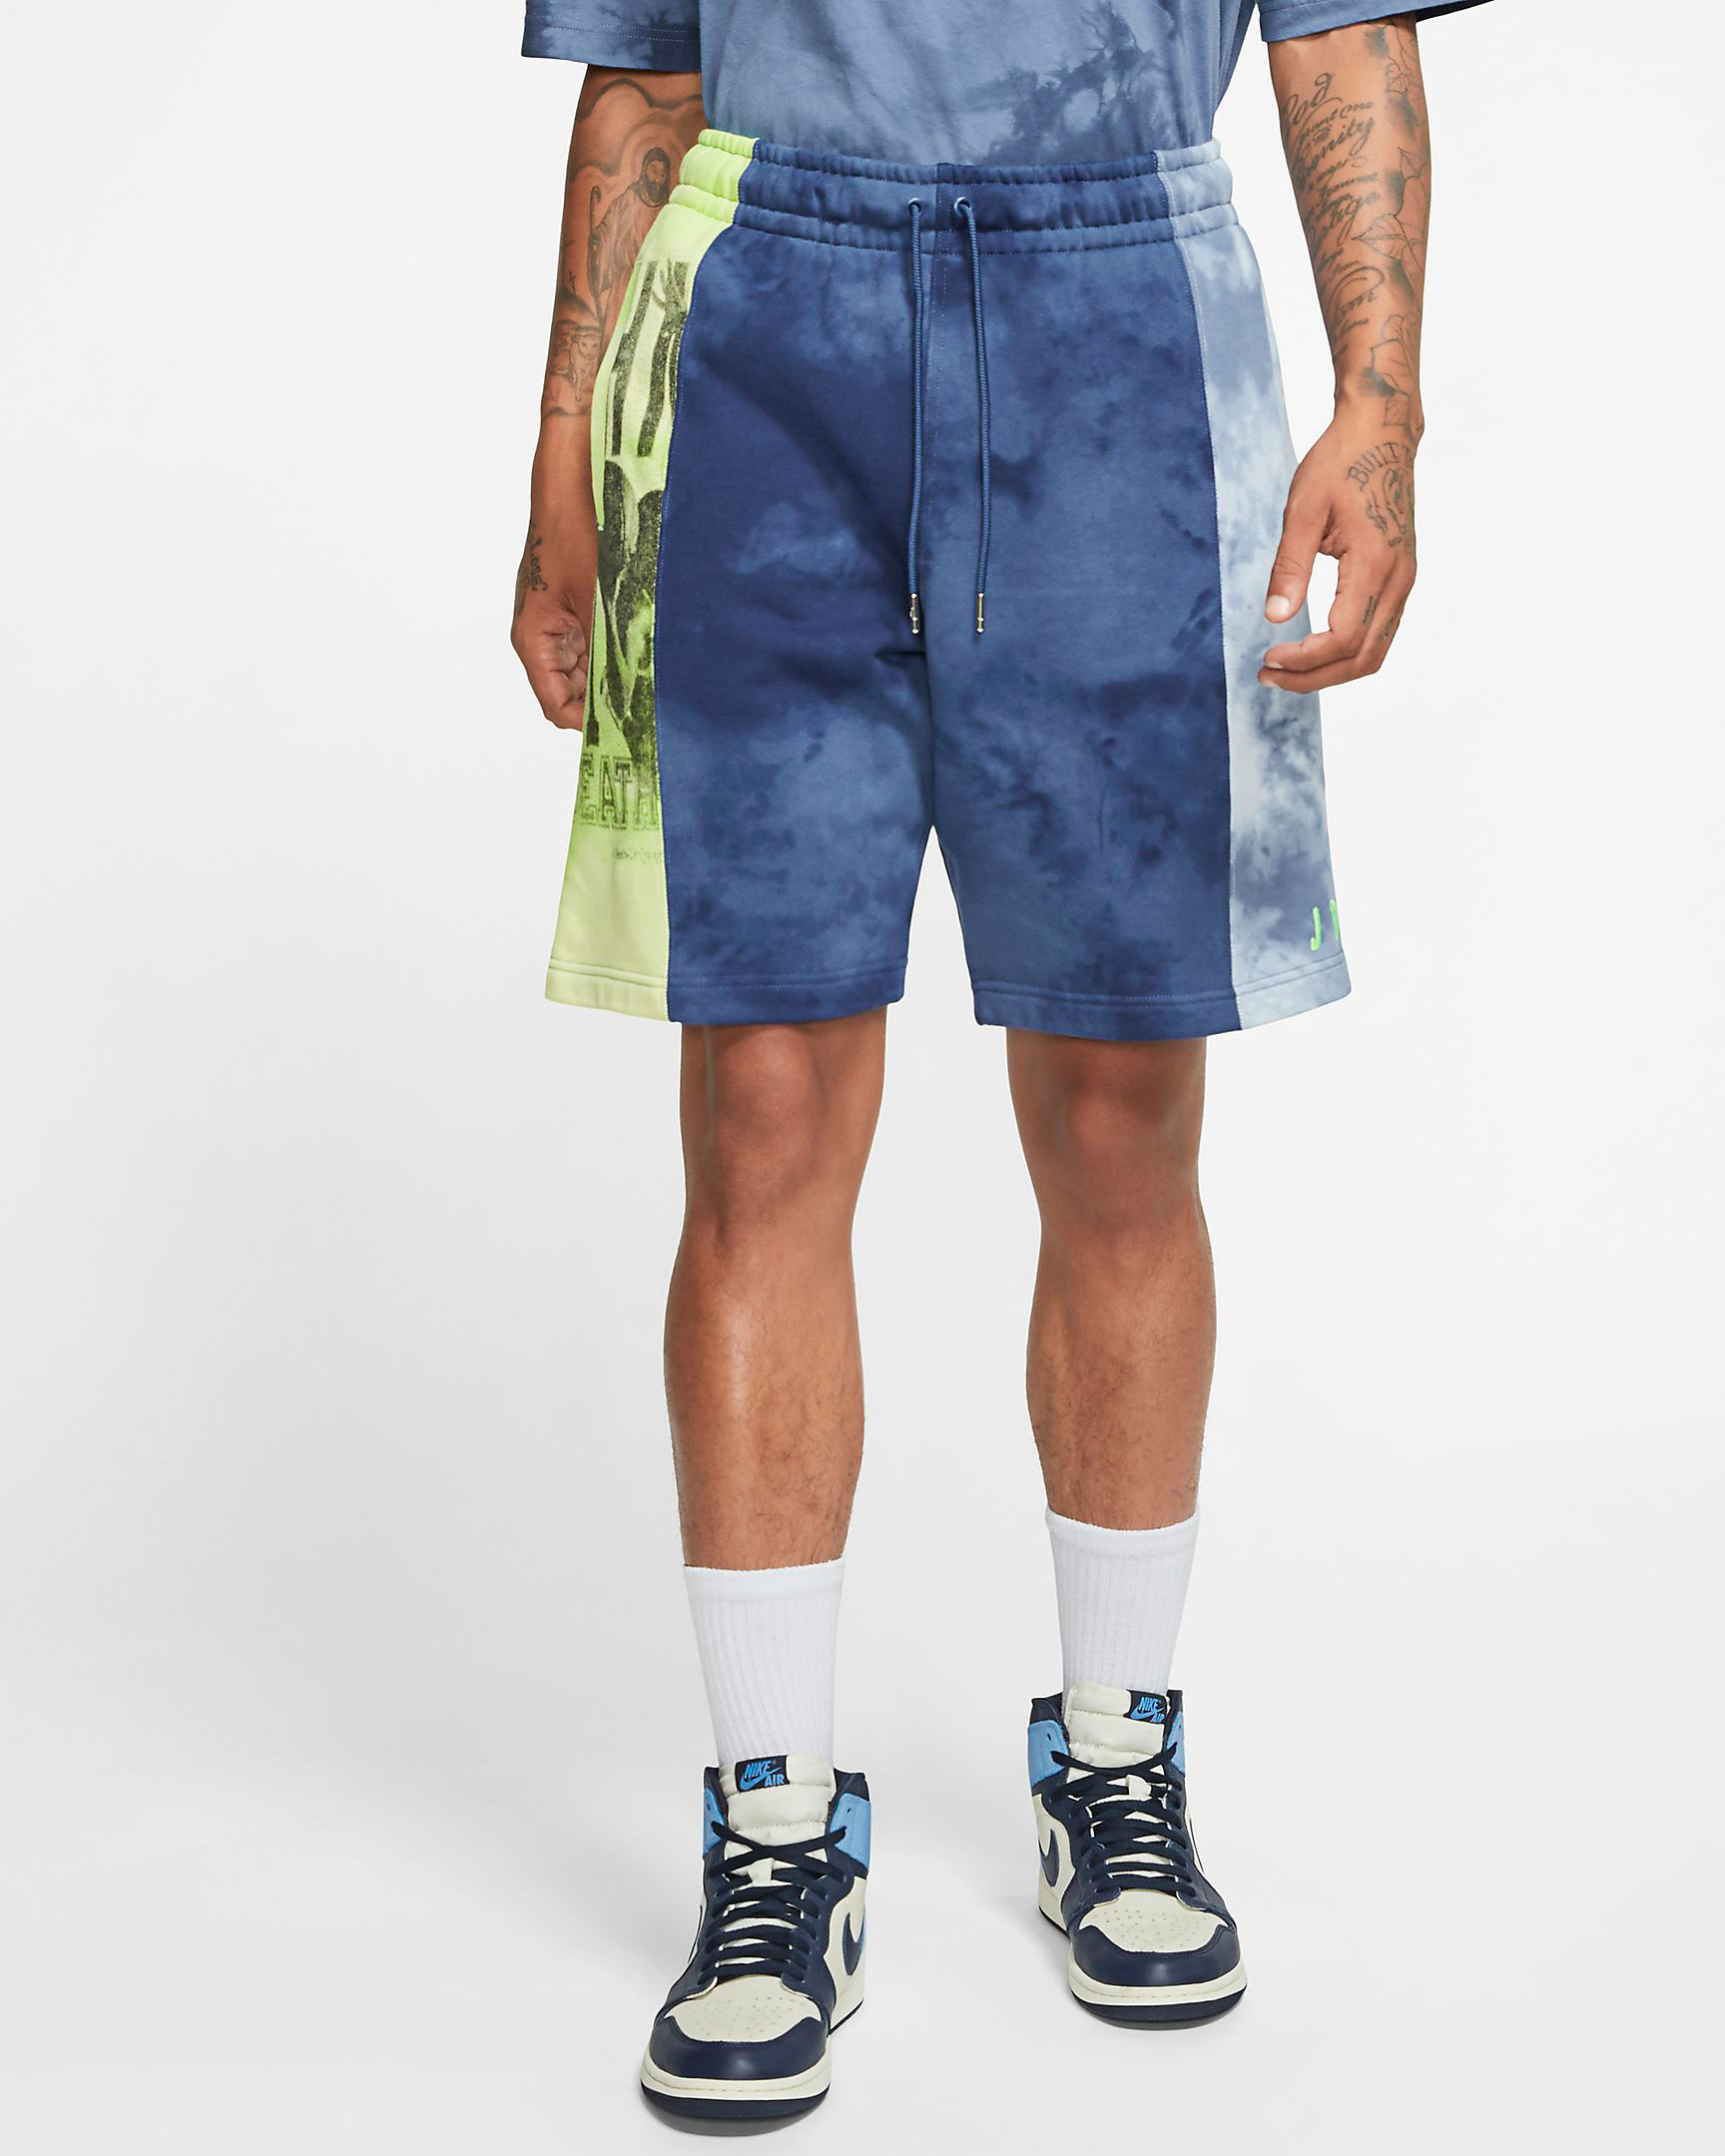 jordn-sport-dna-vintage-shorts-blue-green-1